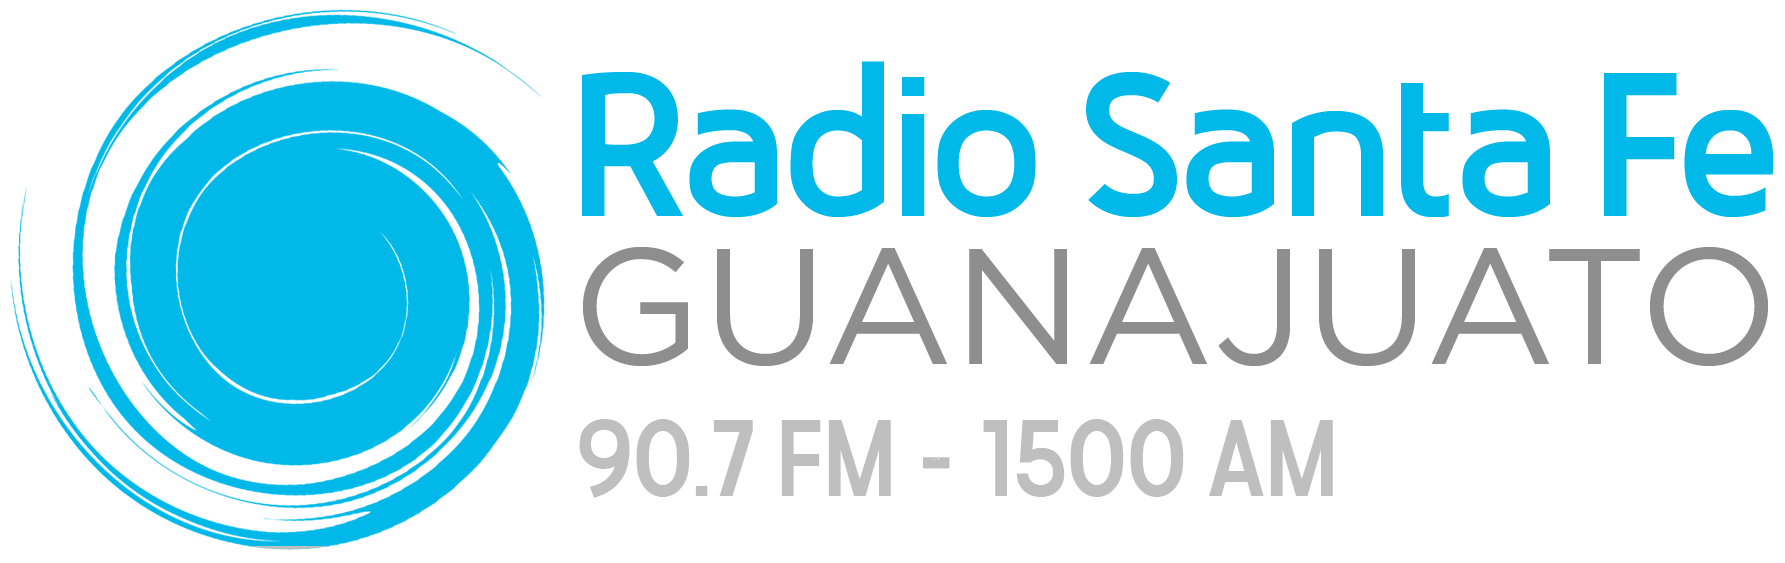 Radio Santa Fe Guanajuato